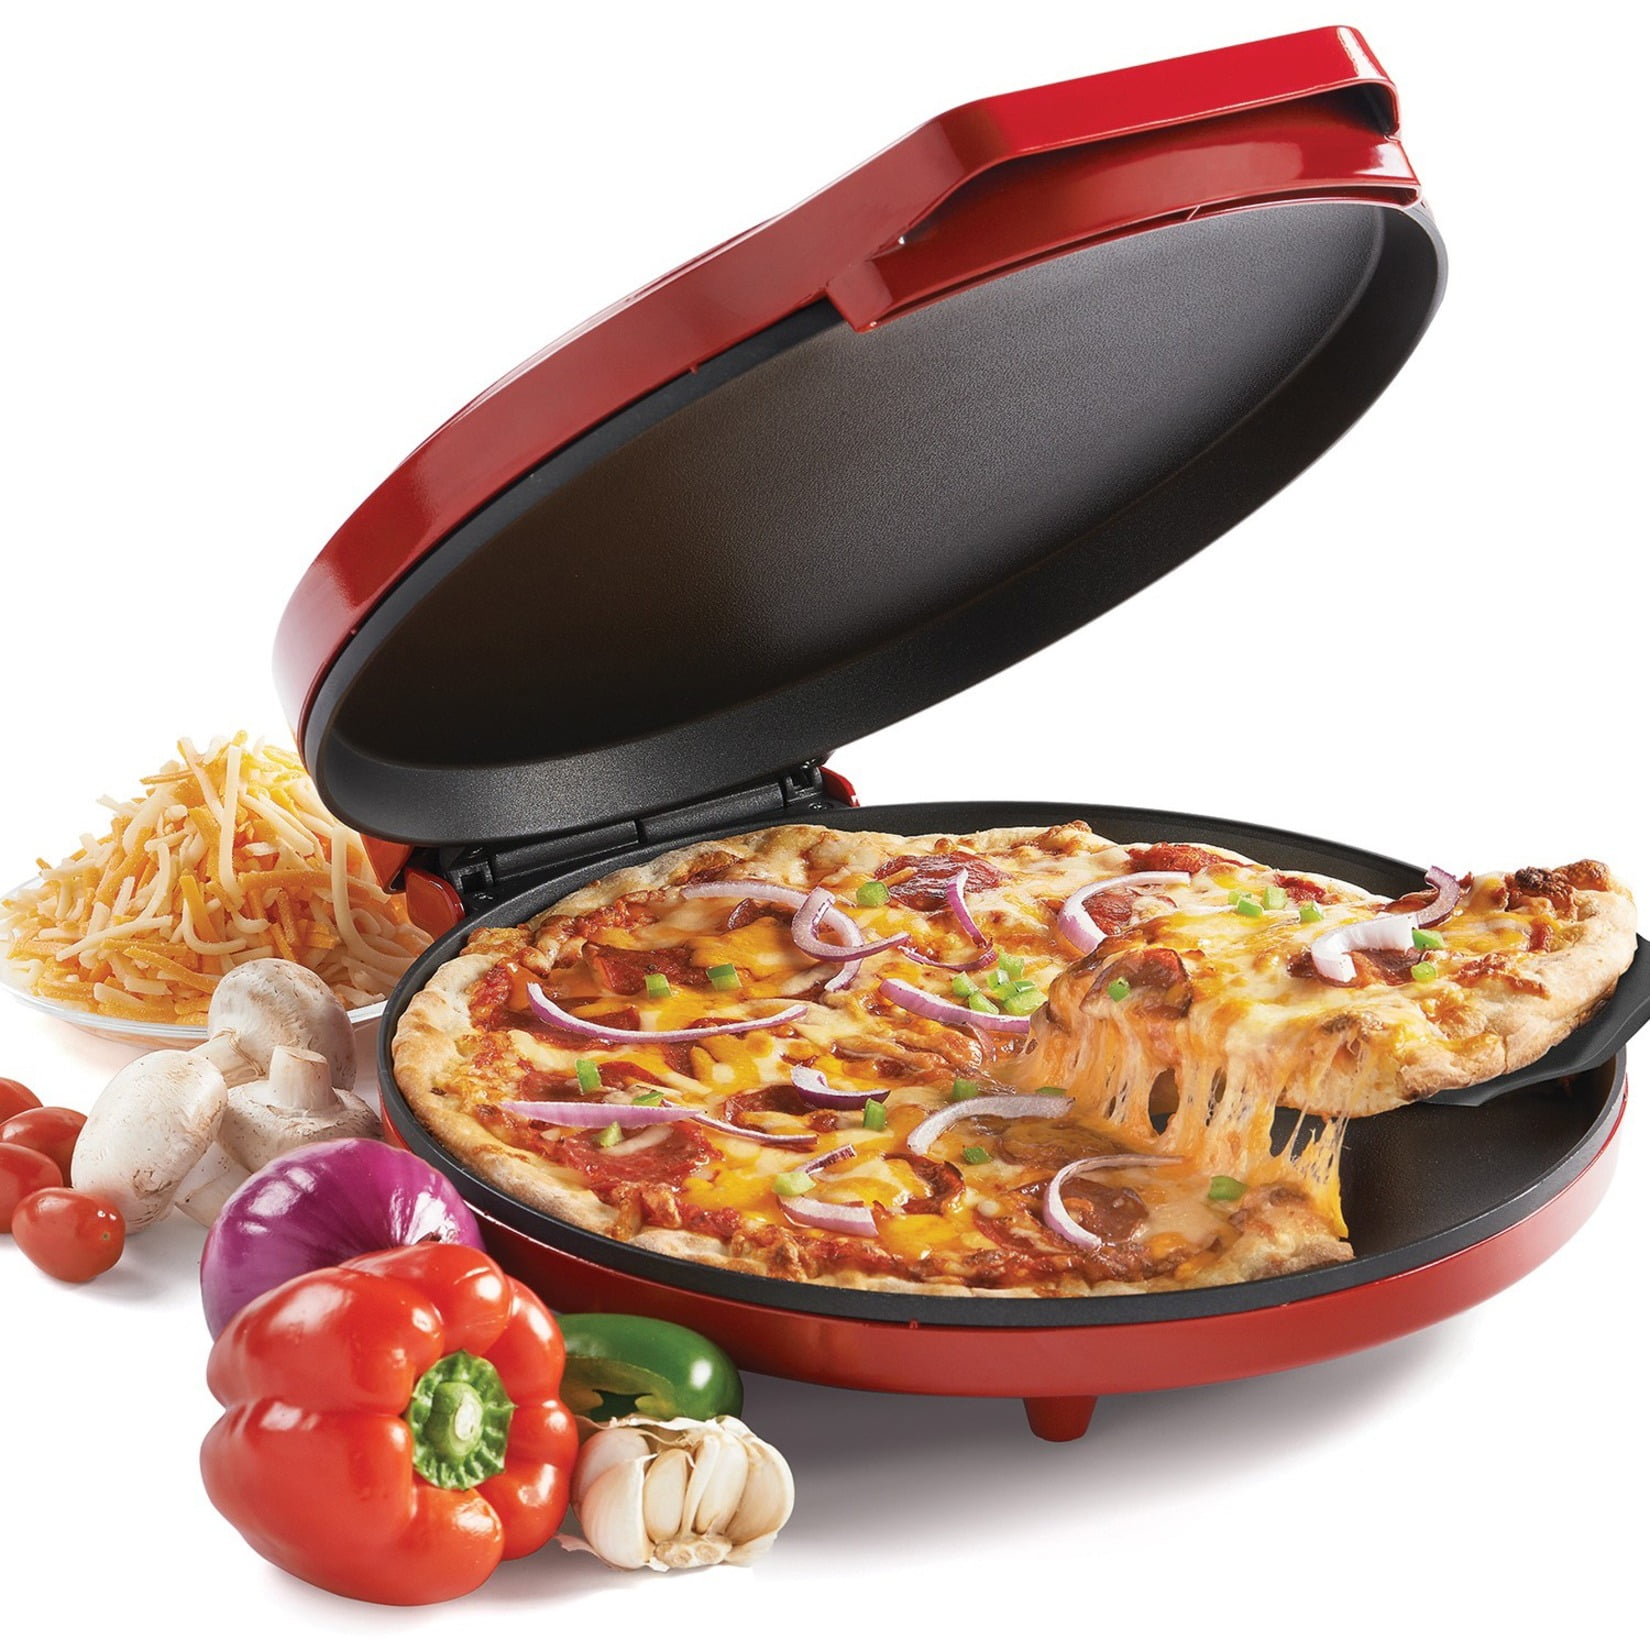 Presto® Pizzazz® Plus Rotating Pizza Oven 03430, Black - Walmart.com